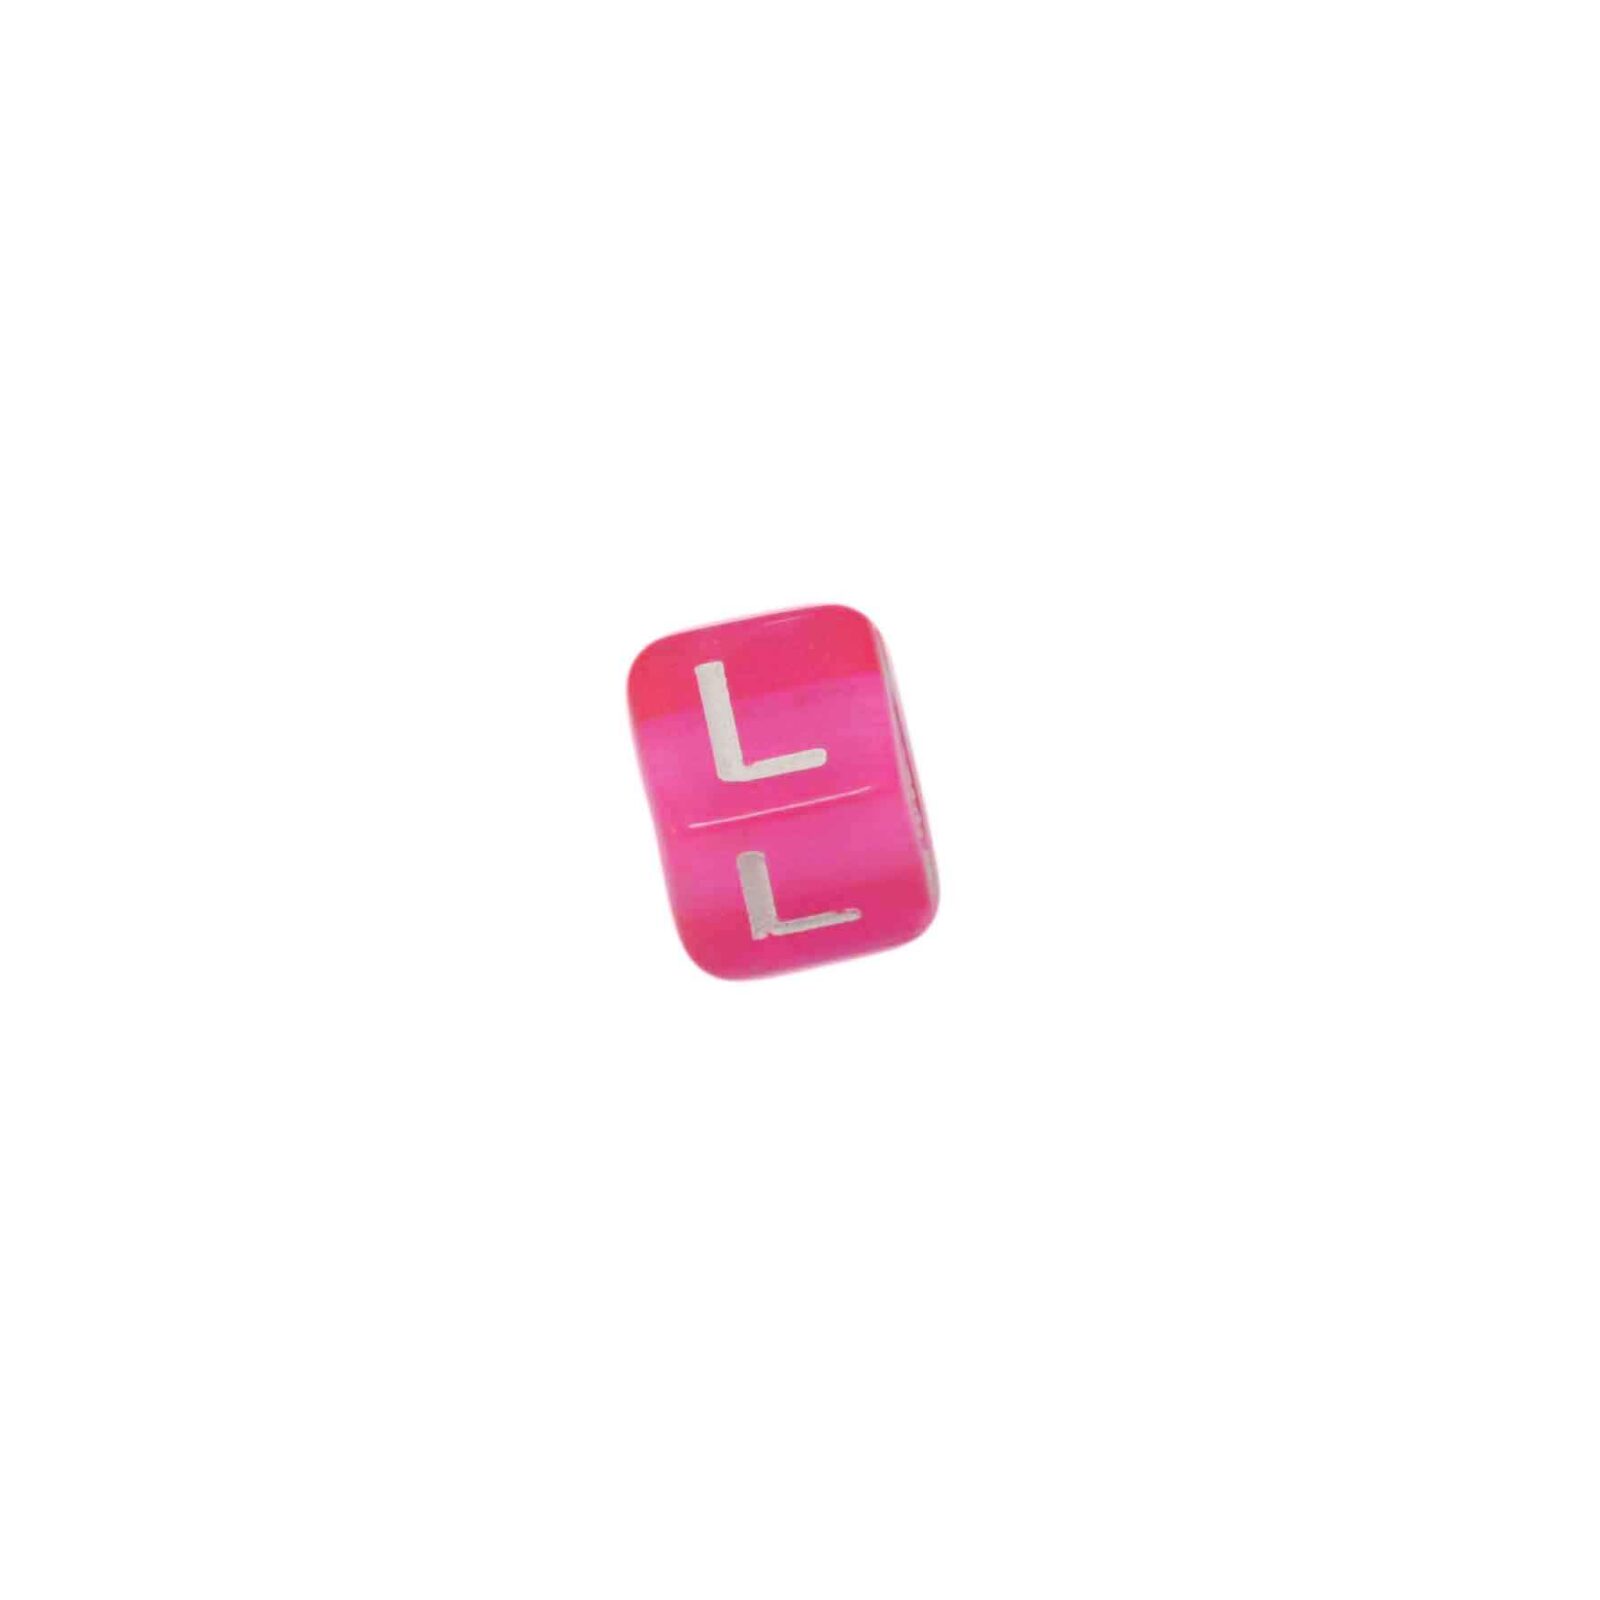 Rood roze letterkraal L